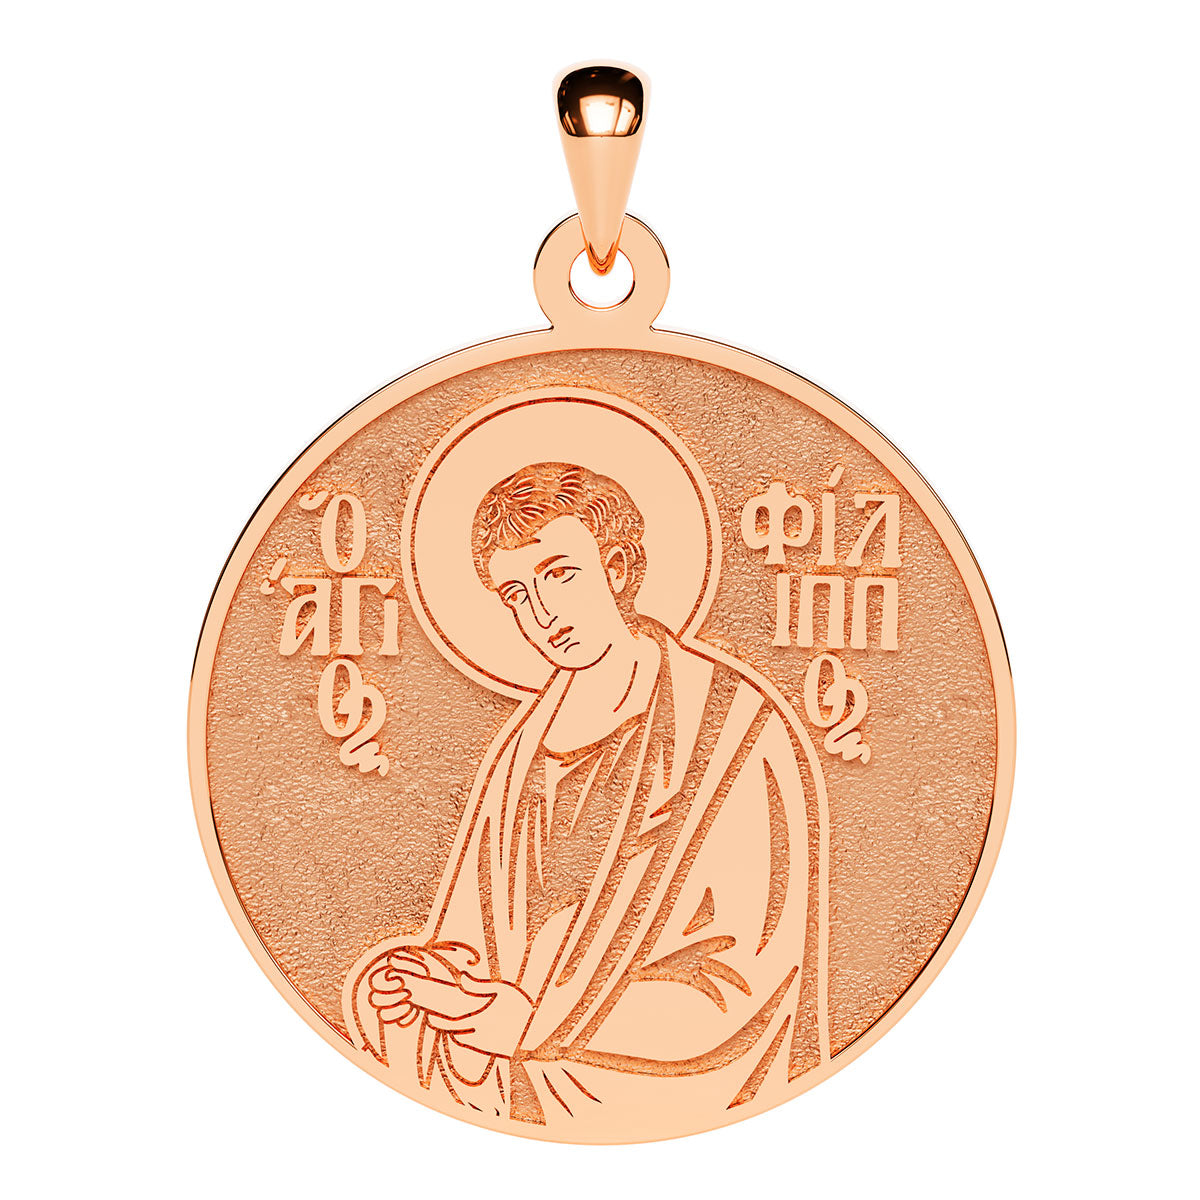 Saint Philip (Filippos) the Apostle Greek Orthodox Icon Round Medal